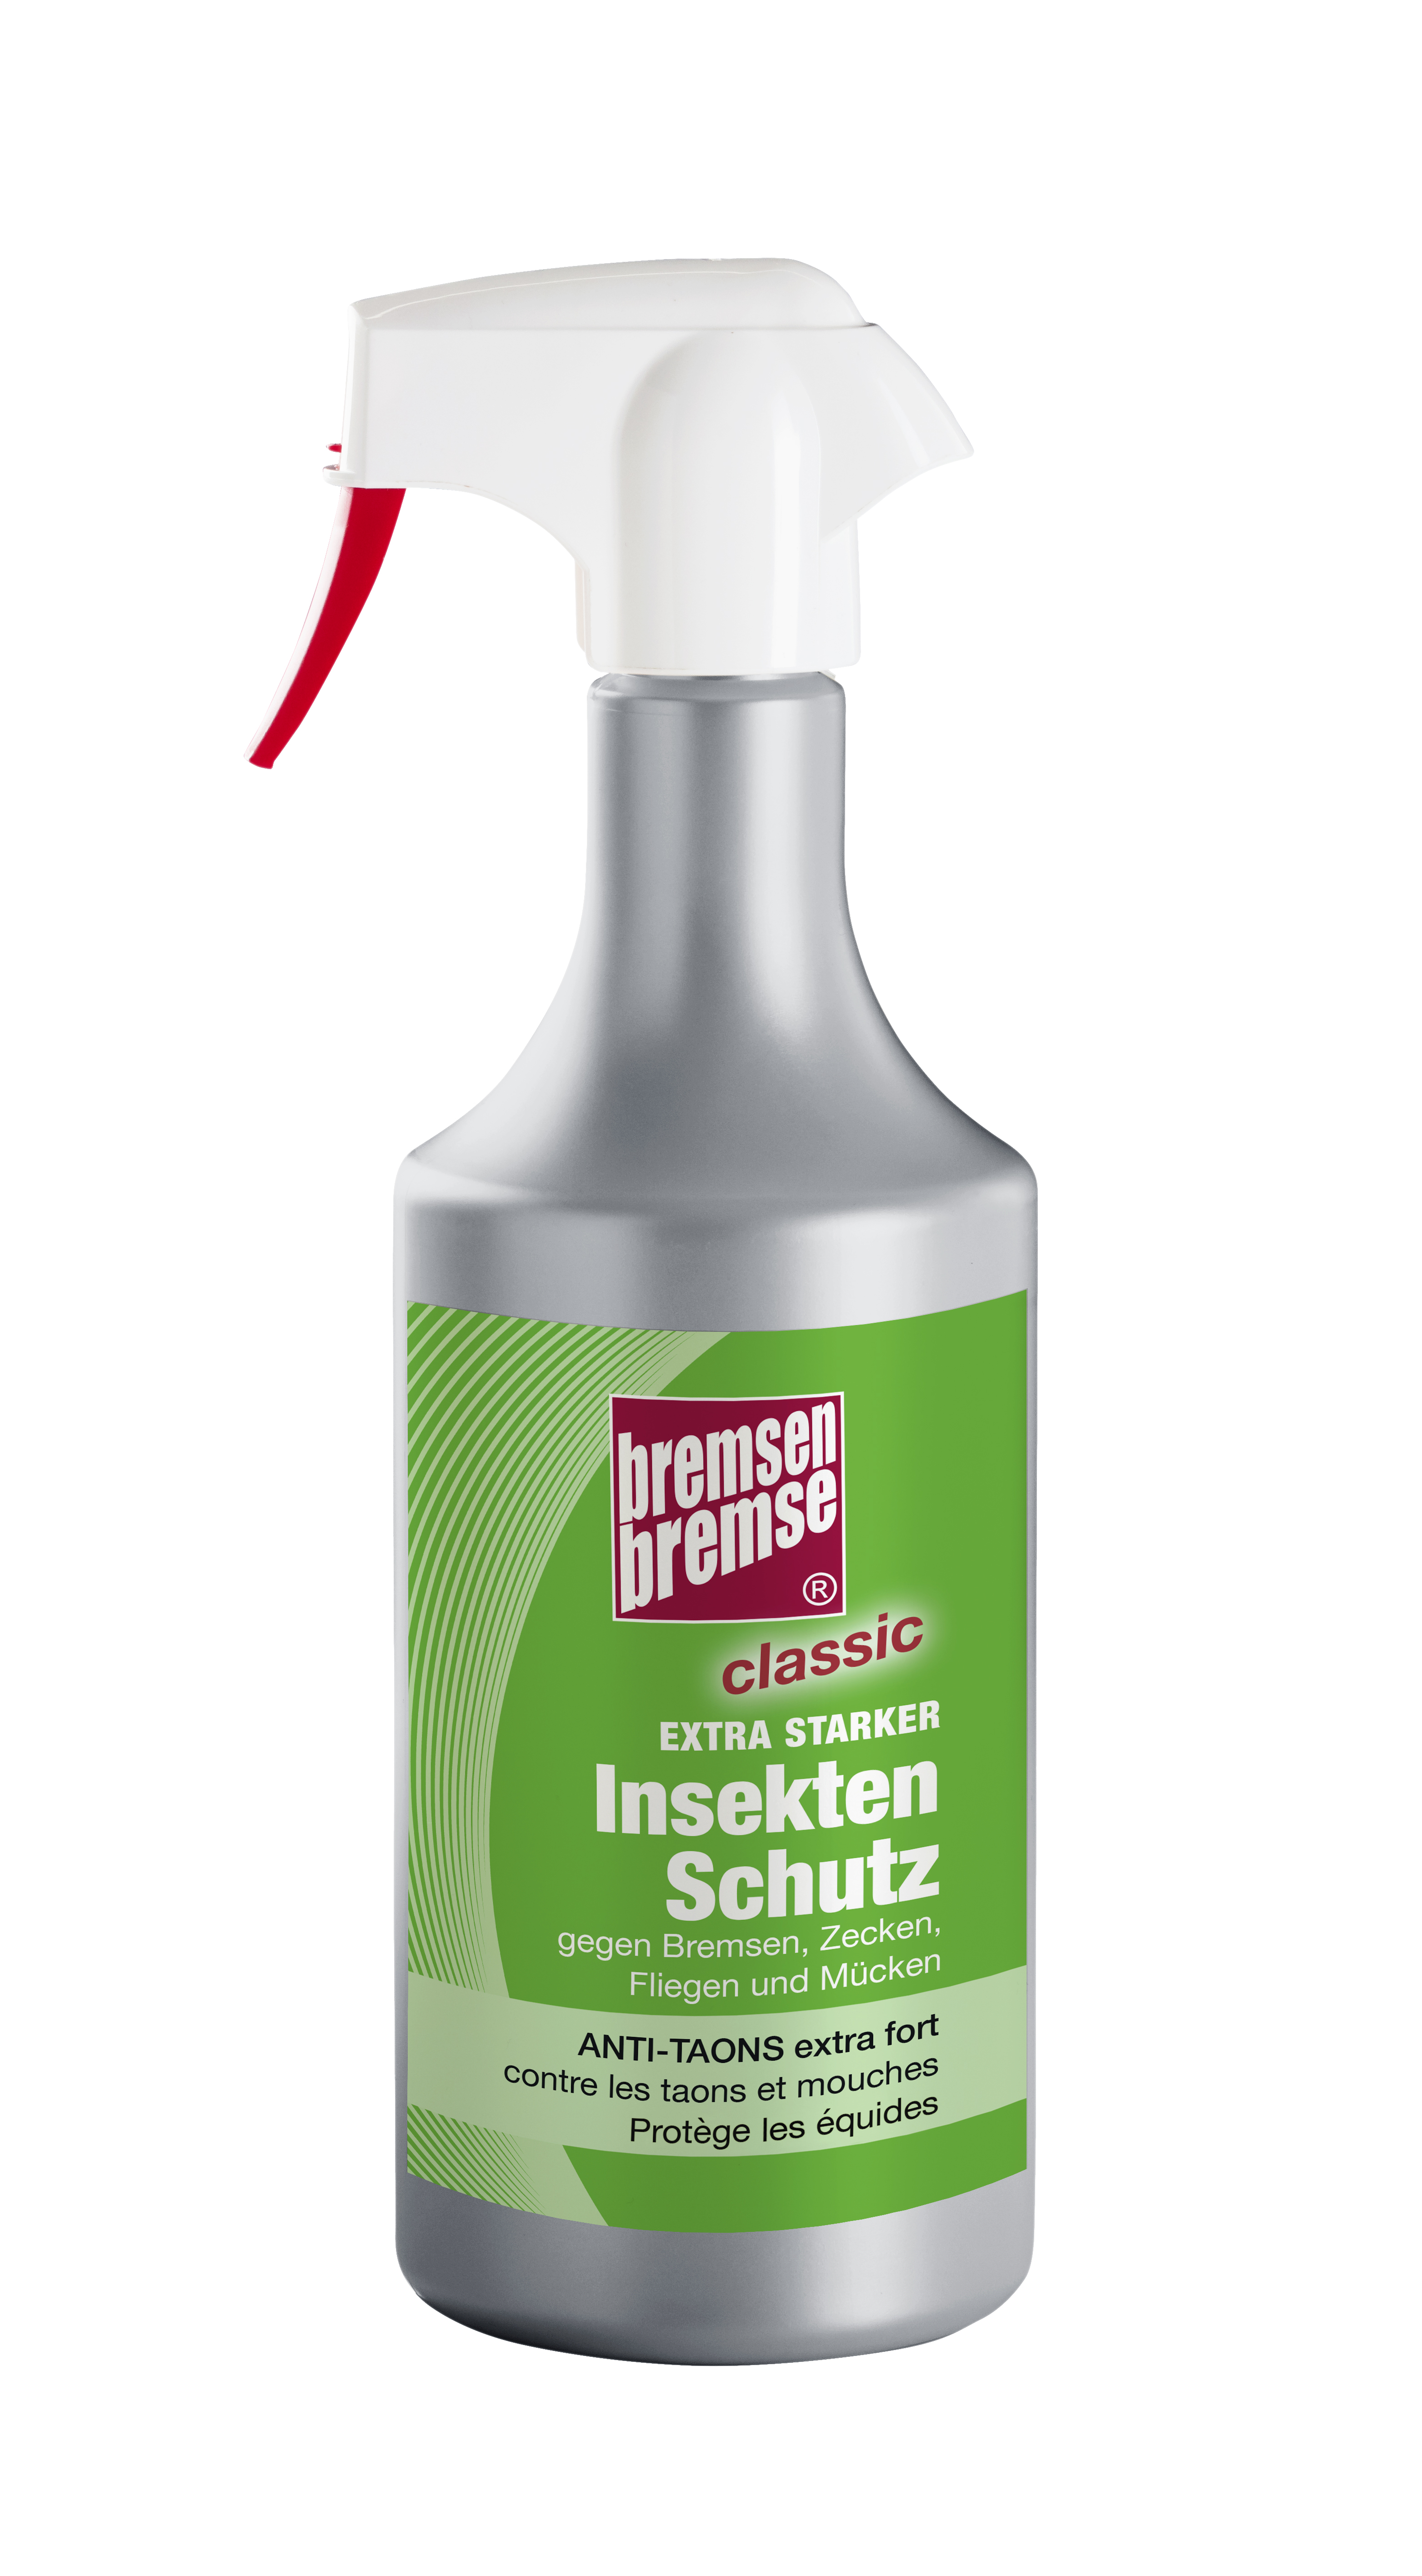 Zedan Bremsen-Bremse Classic 750ml Sprühflasche